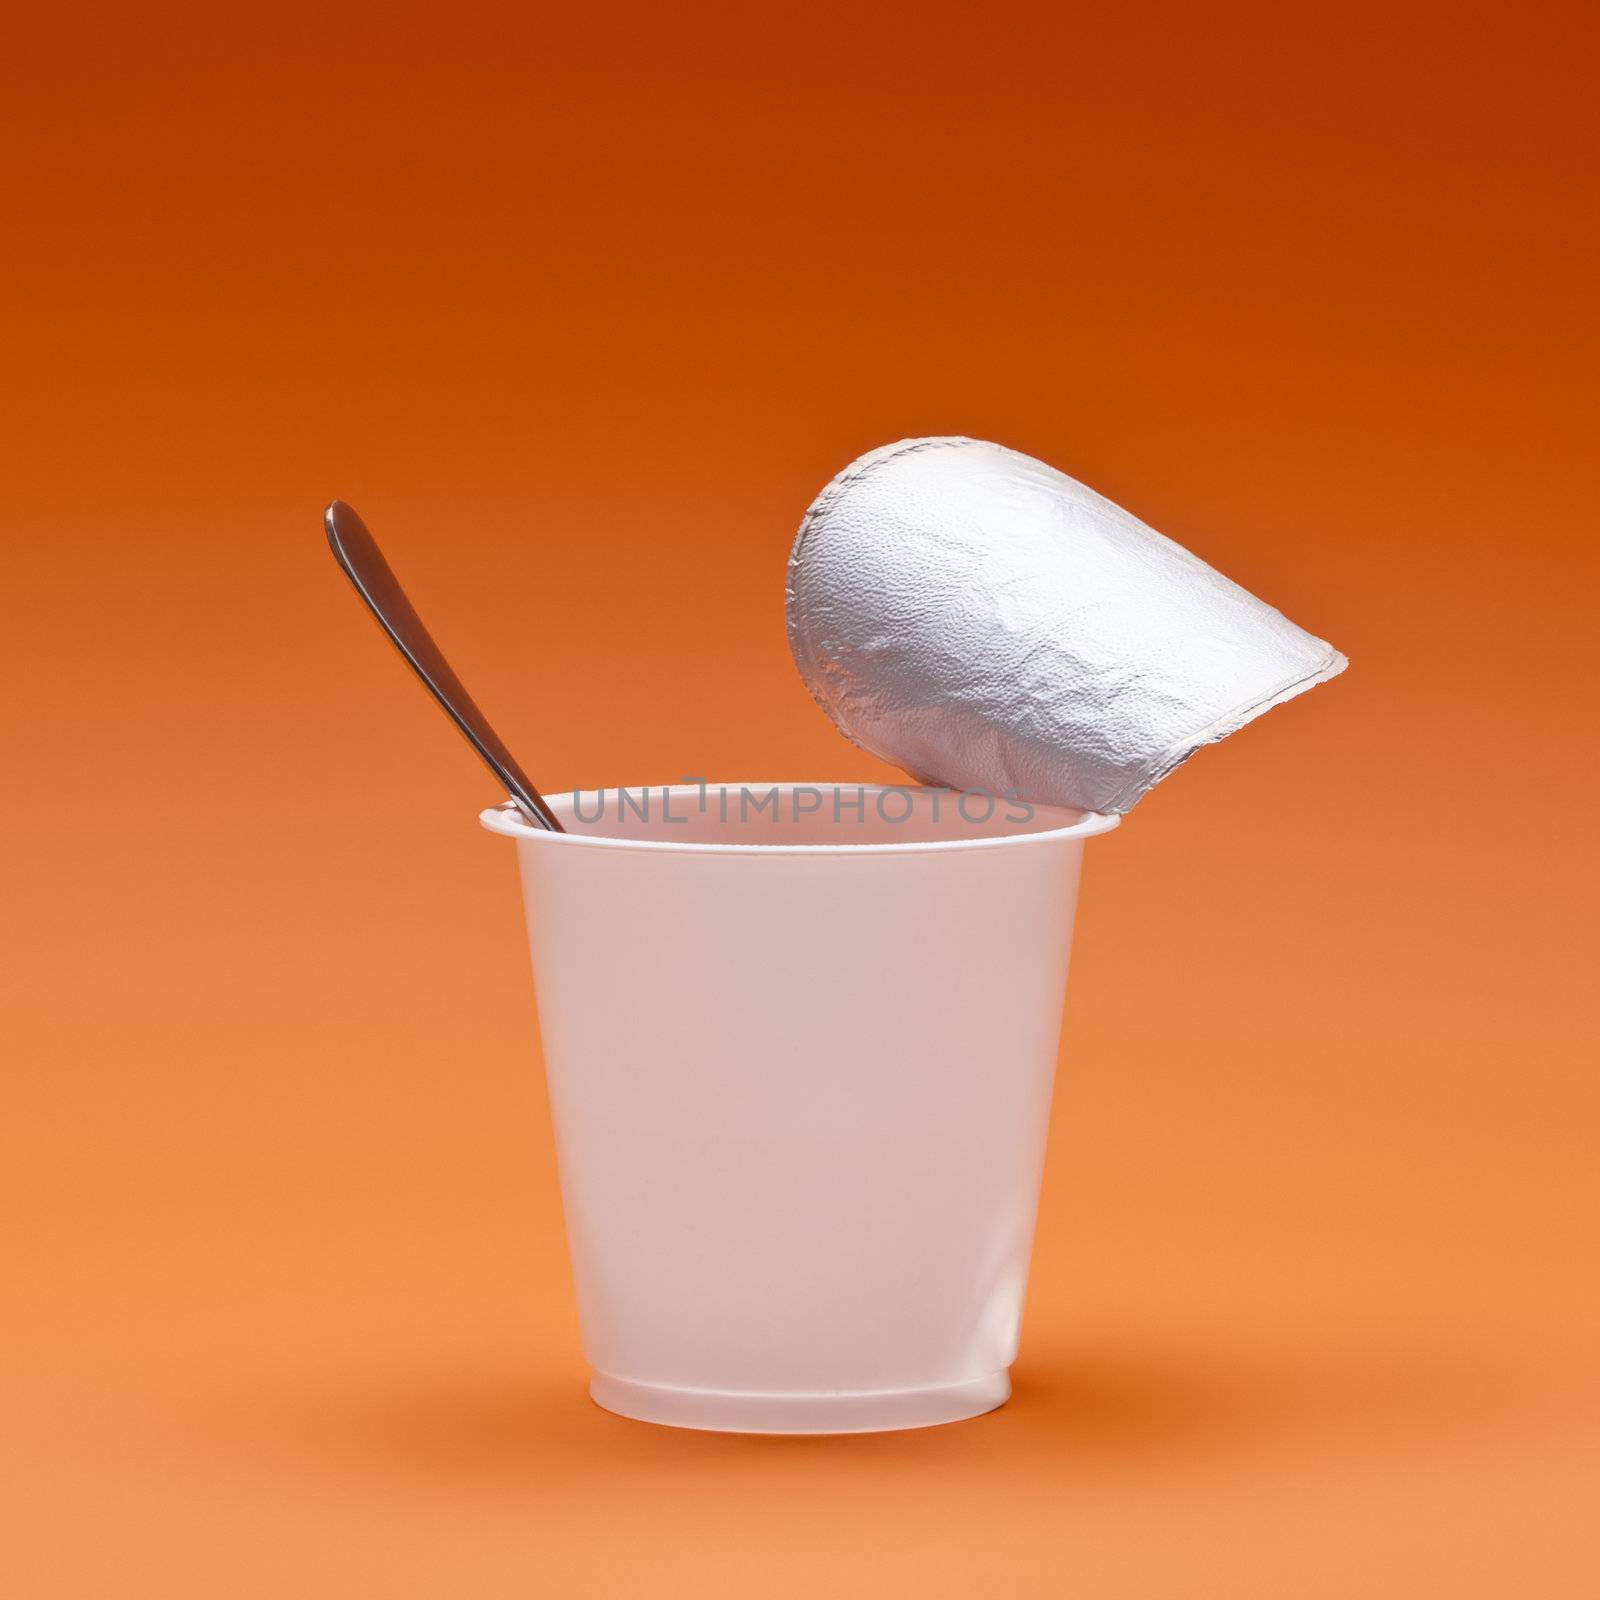 An image of a nice jogurt cup